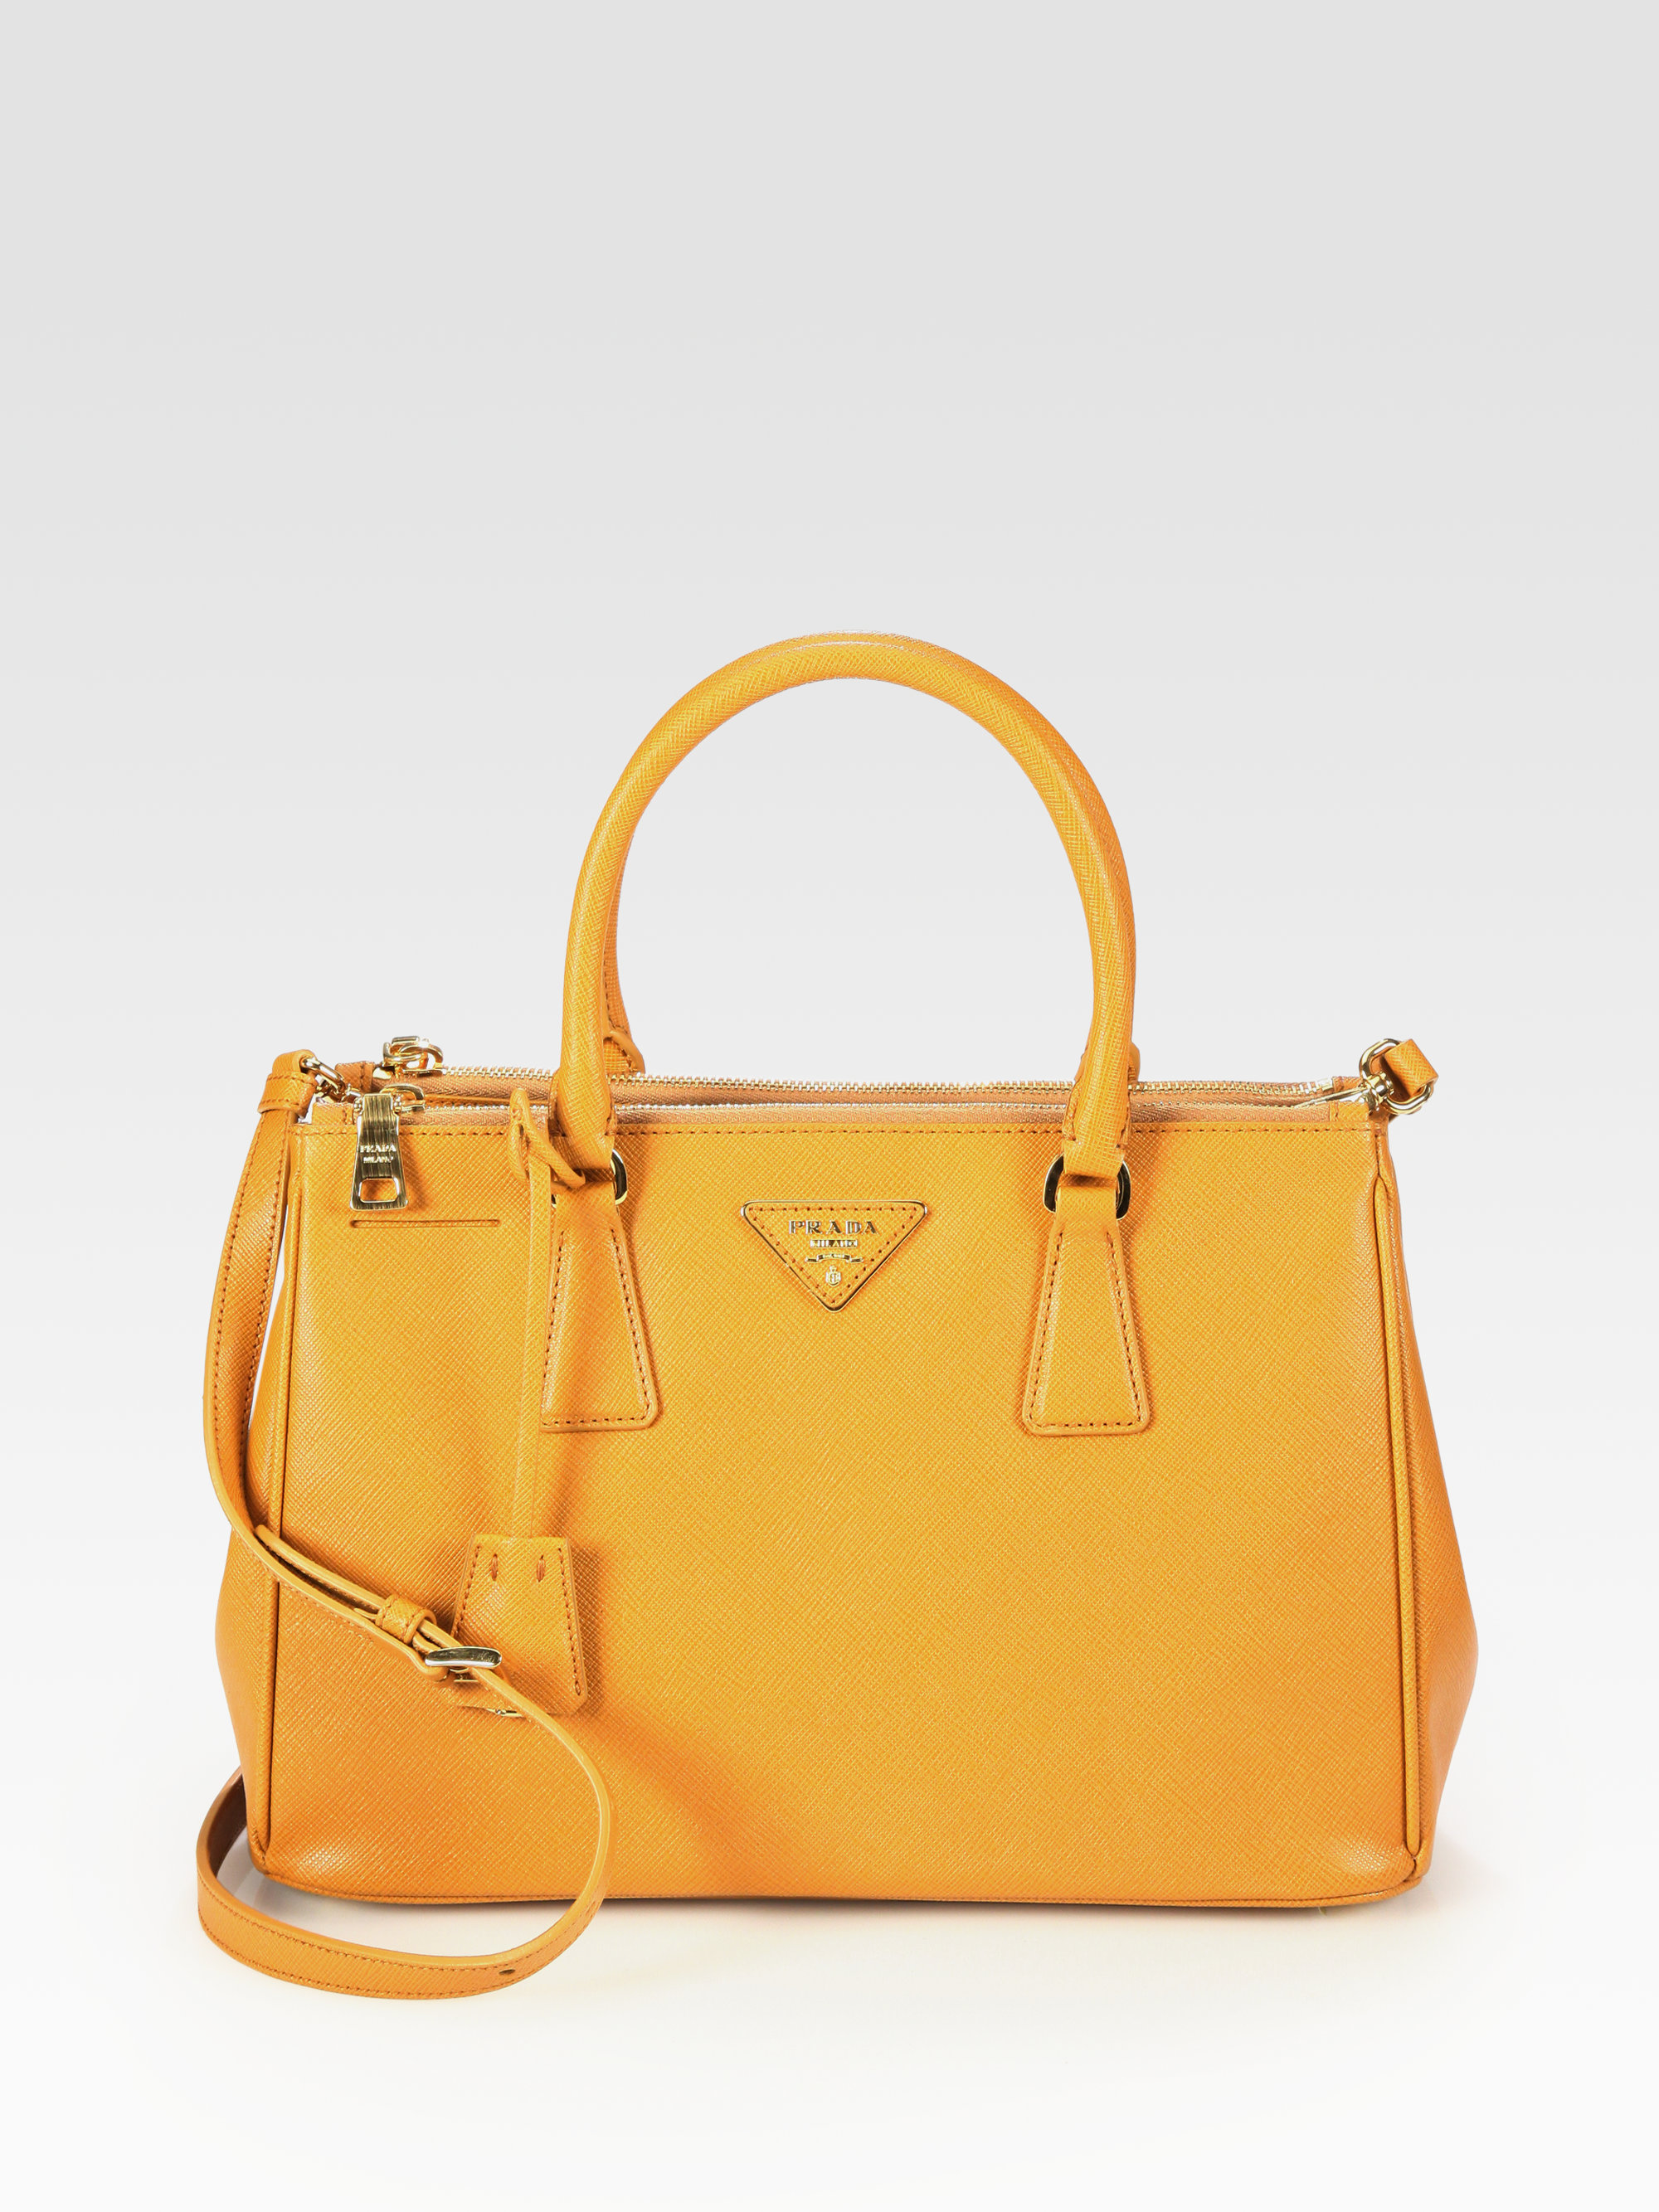 Prada Saffiano Lux Small Tote Bag in Orange (ocra-orange) | Lyst